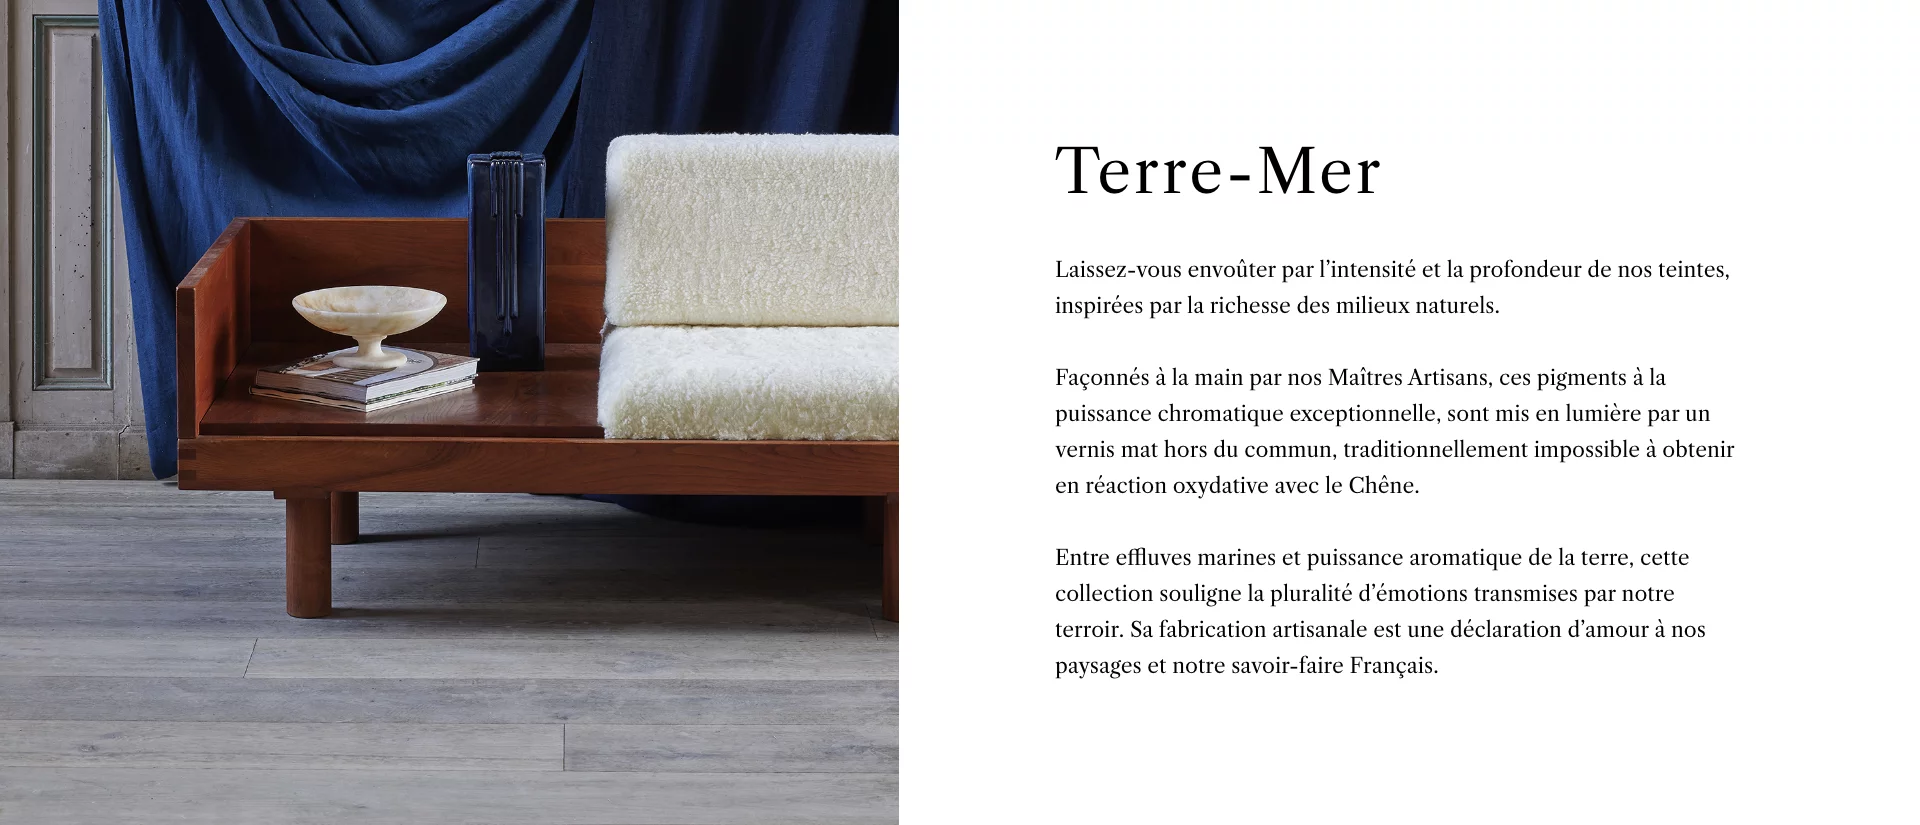 Collection Terre-Mer - Description